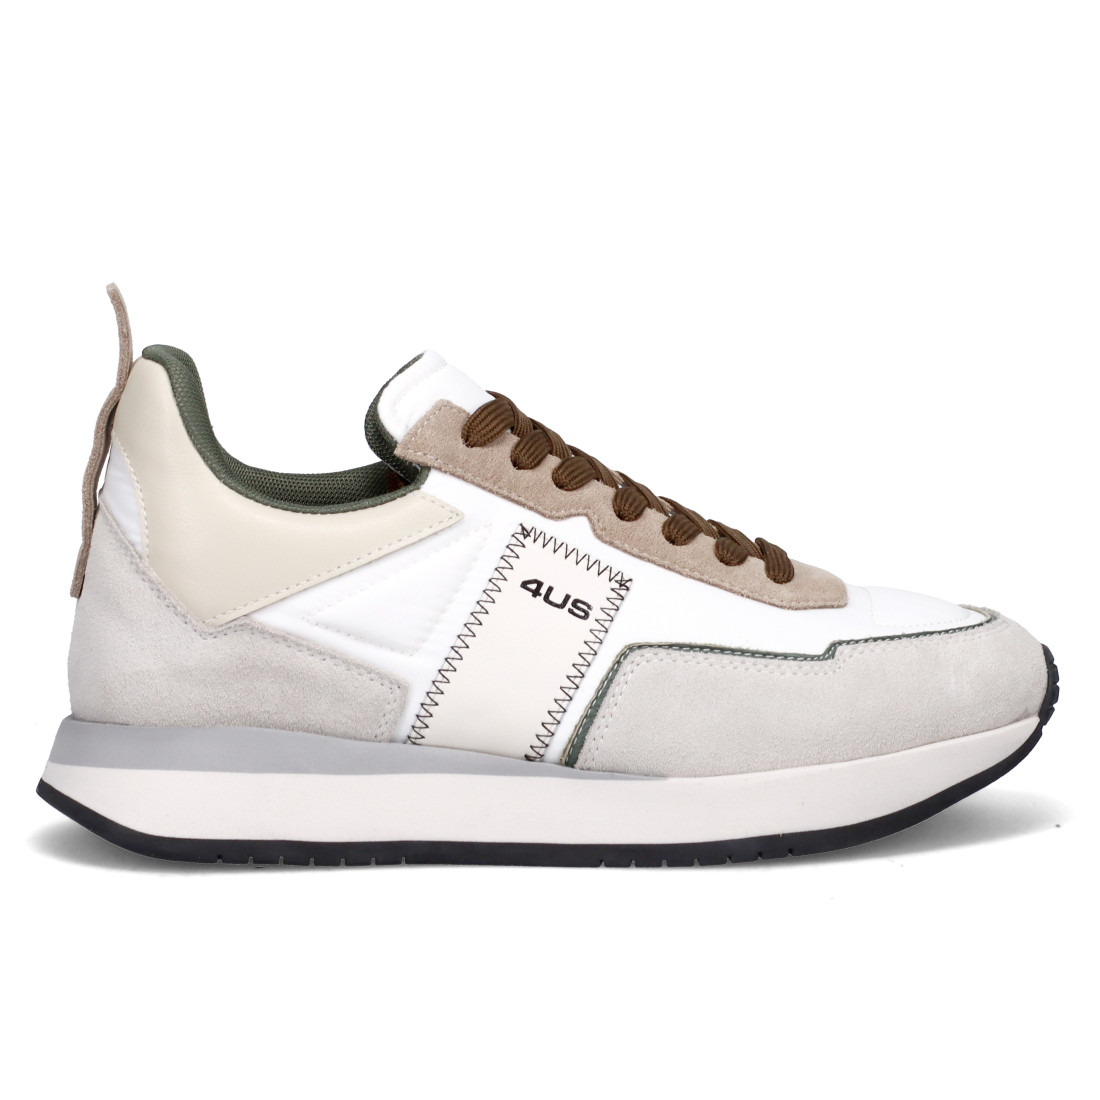 Paciotti 4US Sean 300 white, gray and dove gray men's sneaker